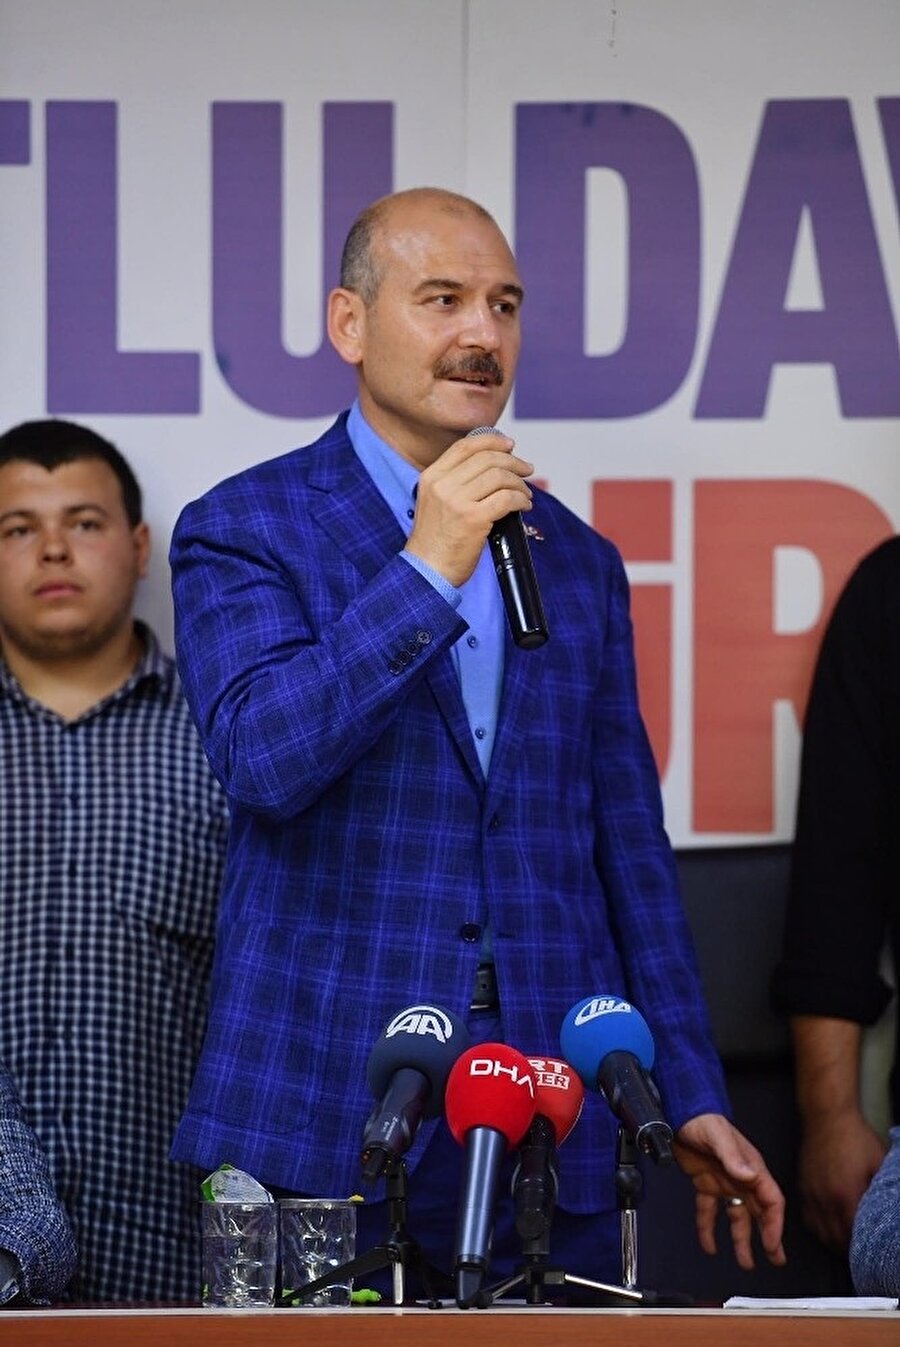 İçişleri Bakanı Süleyman Soylu, Bayrampaşa AK Parti ilçe başkanlığına, seçimde elde edilen sonuç dolayısıyla teşekkür ziyaretinde bulundu. 